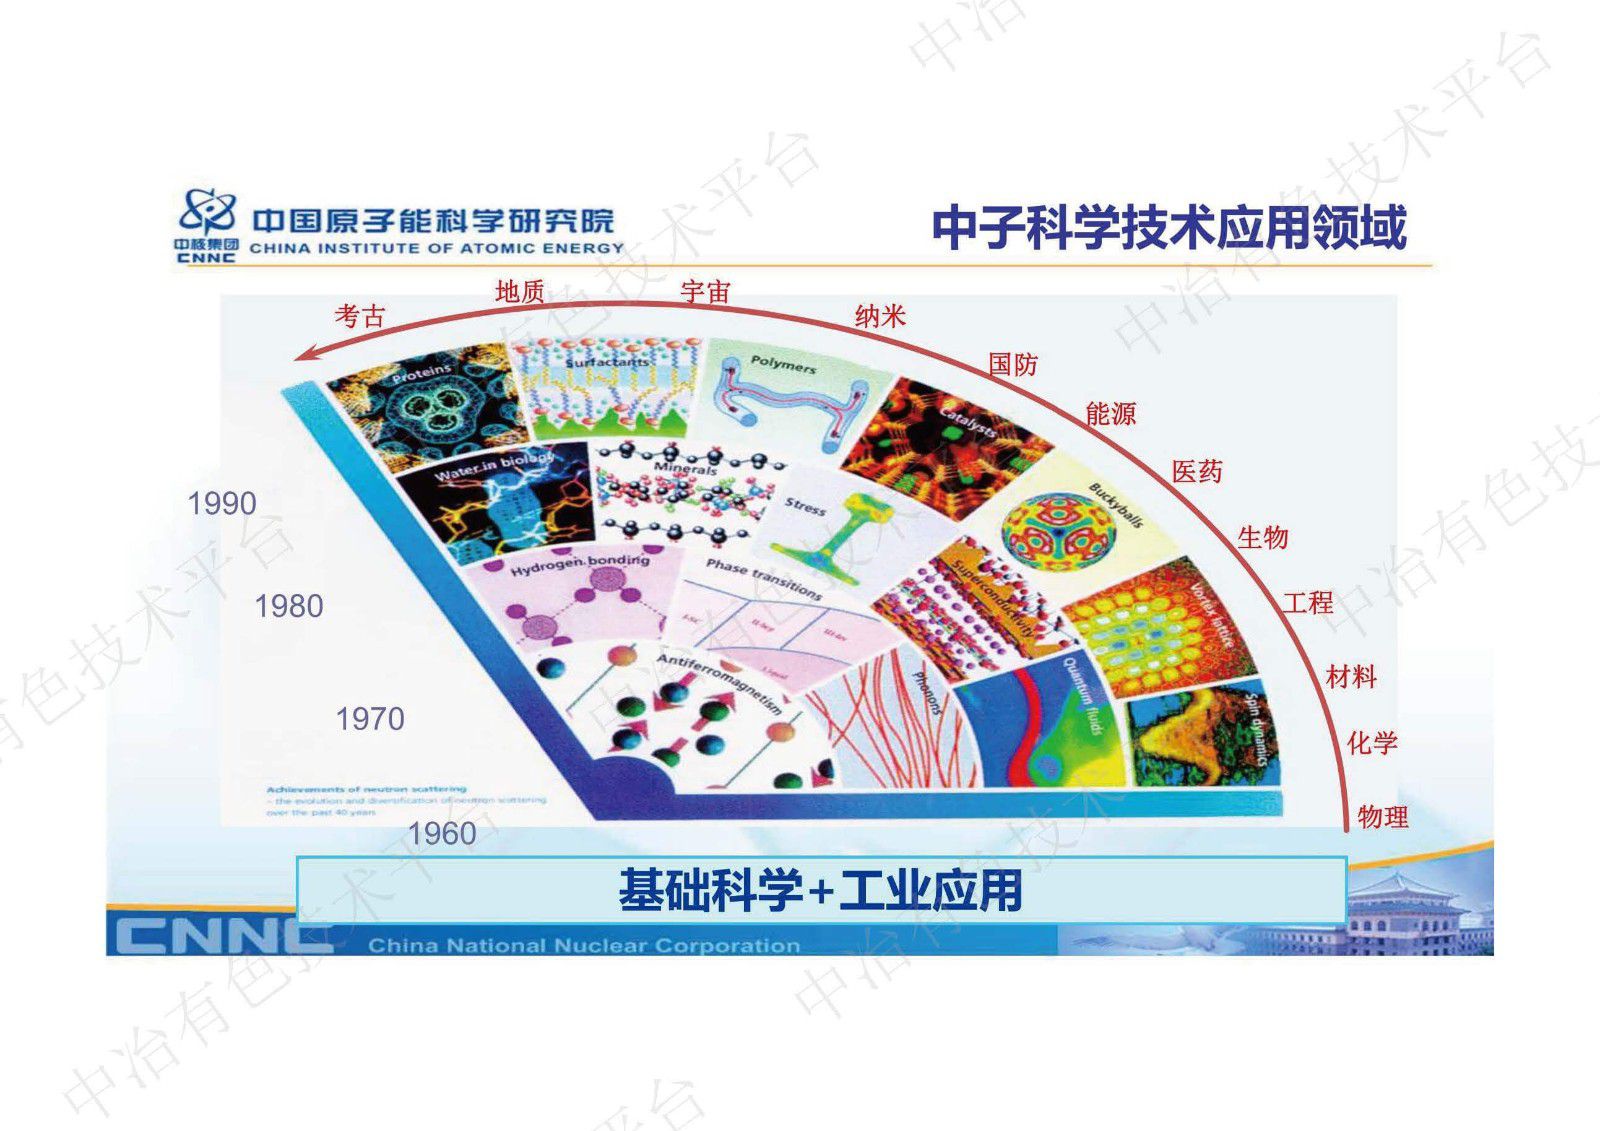 中国先进研究堆中子无损检测平台及其在材料表征中的应用介绍